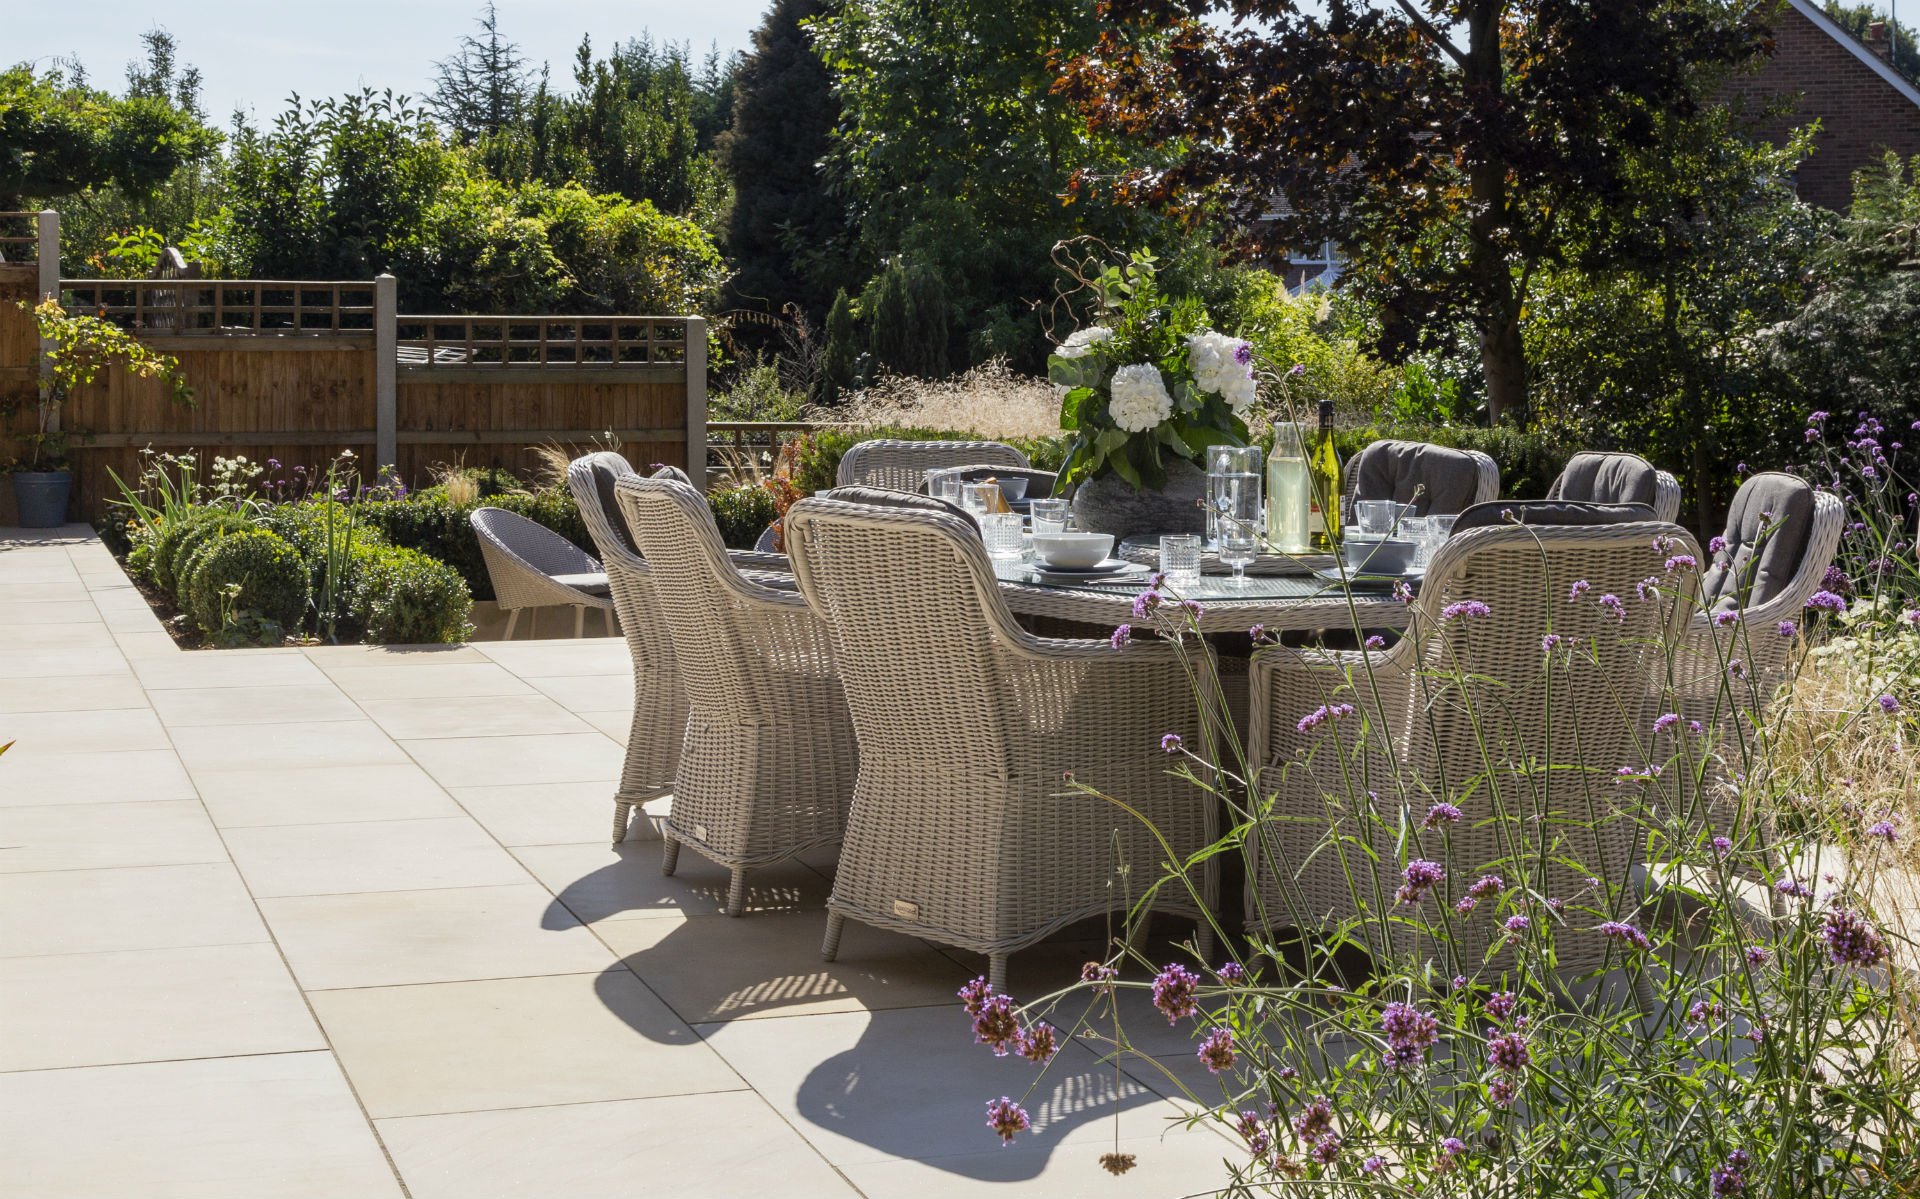 Portfolio Multi-level Landscape Garden Design and Build Ingatestone Essex Upper Patio